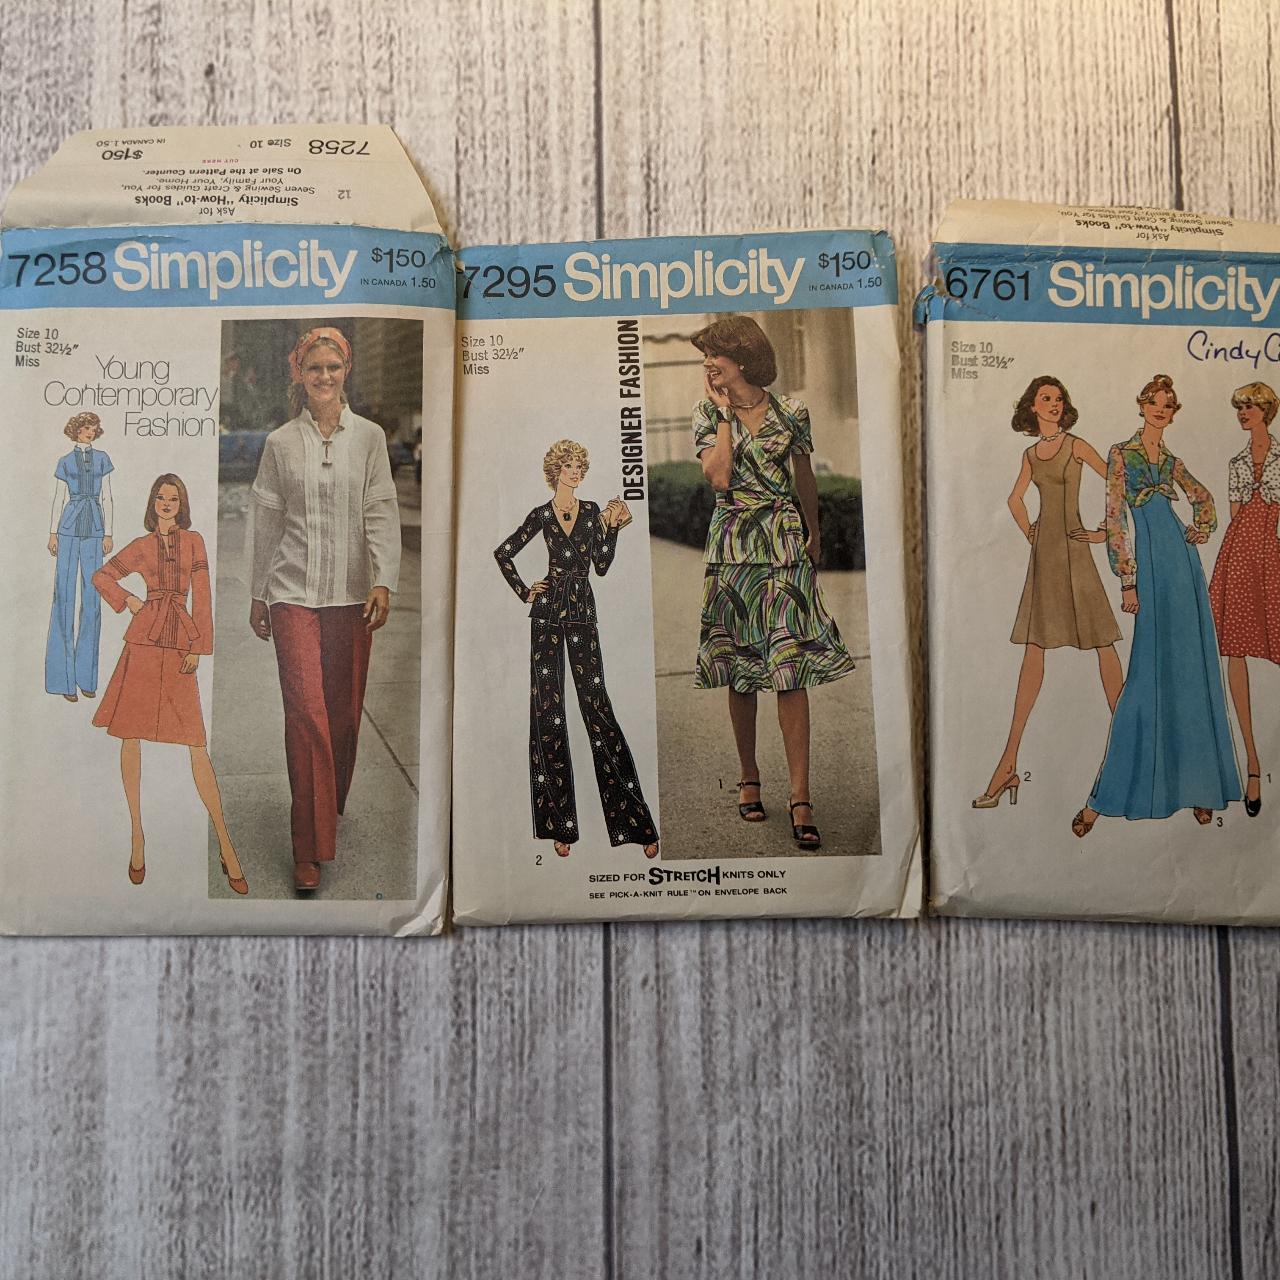 8 Vintage 70's Sewing Patterns These Vintage 1970's... - Depop